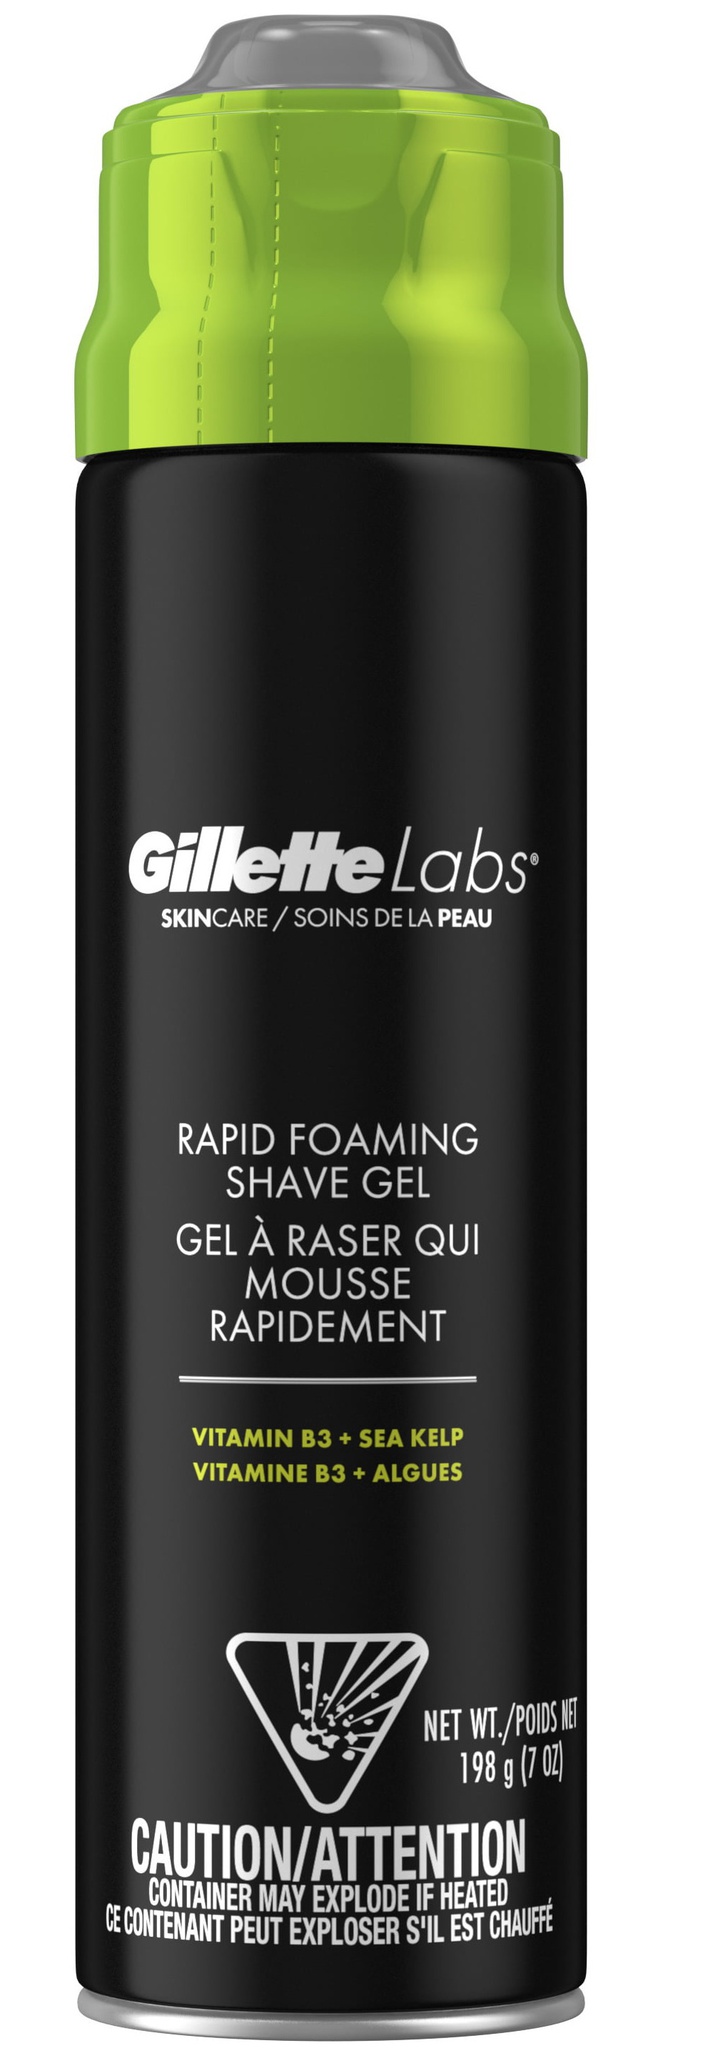 Gillette Labs Rapid Foaming Shave Gel